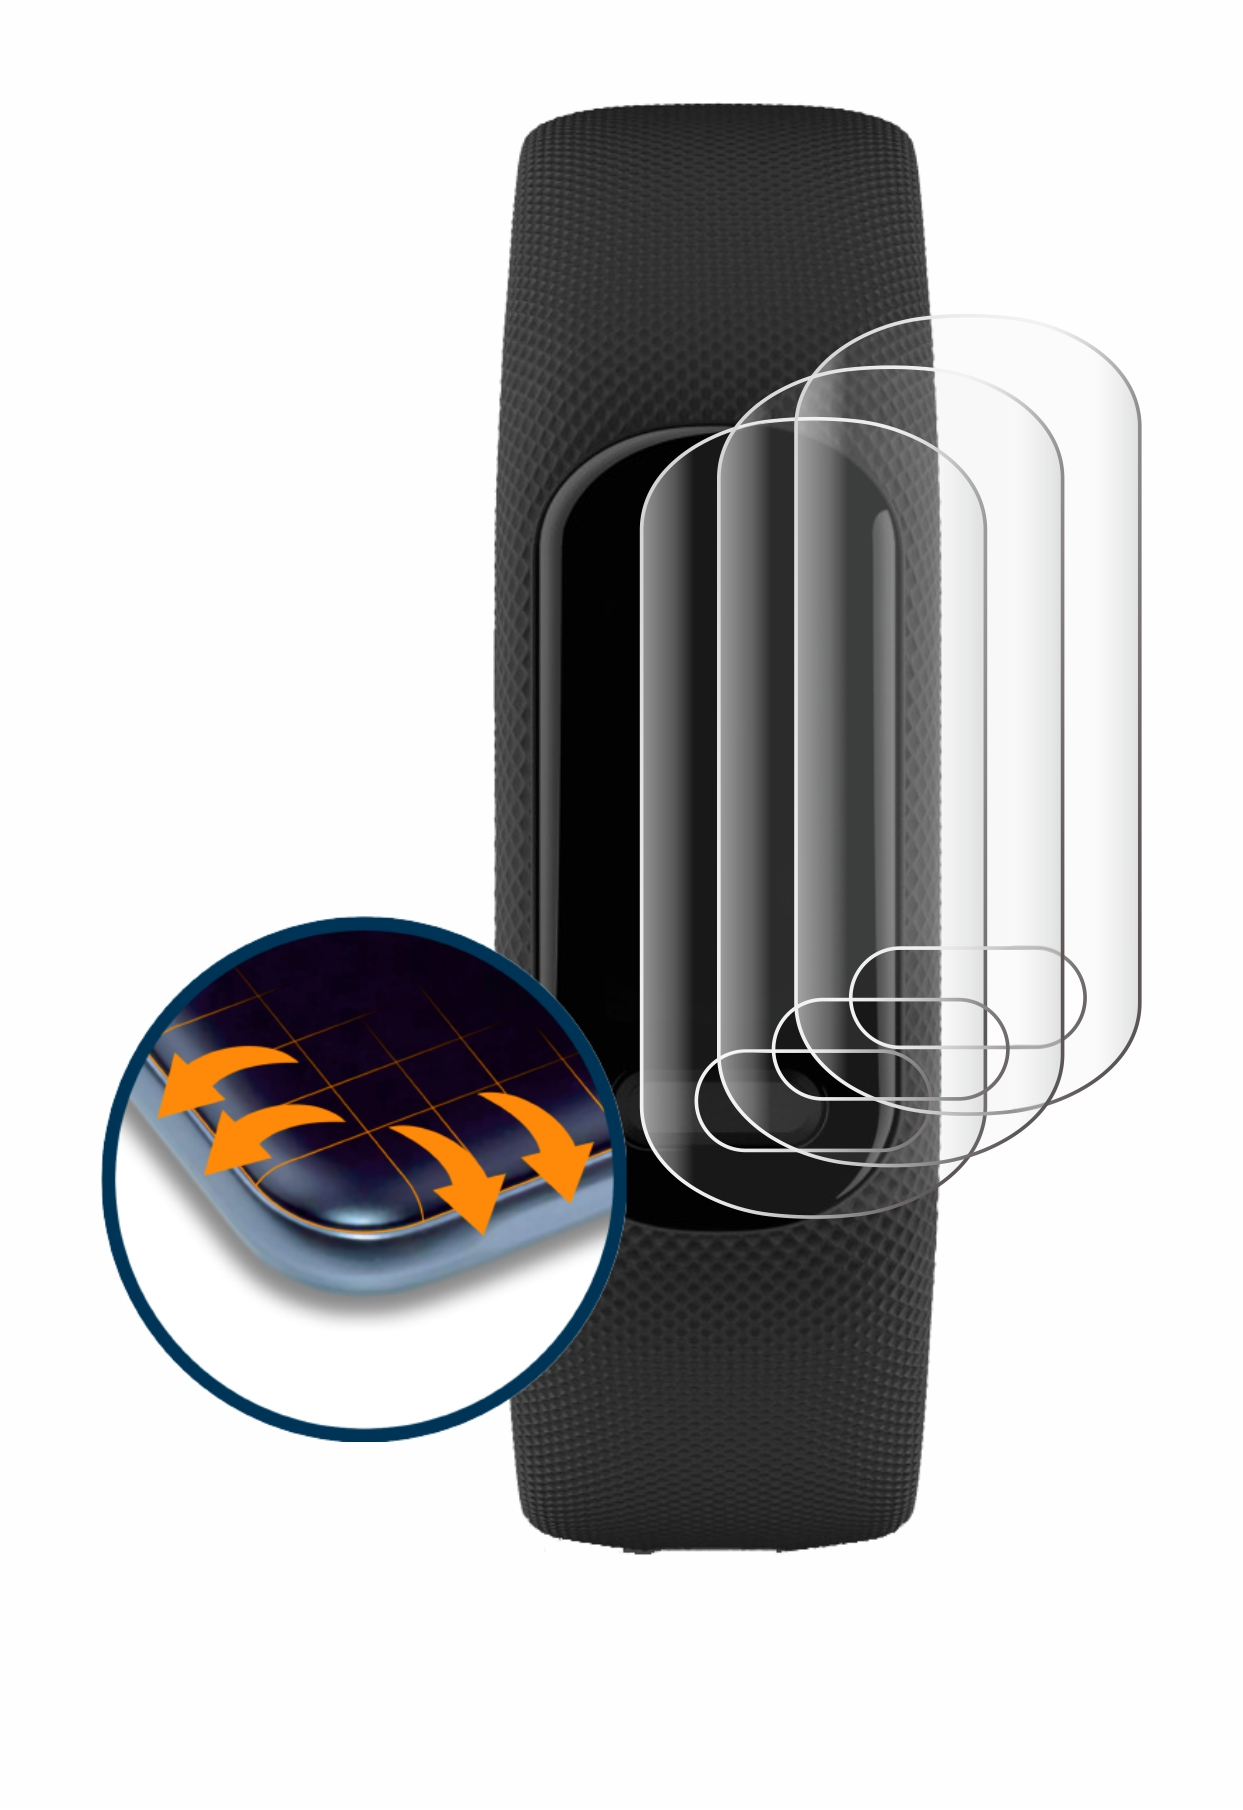 5) Curved Vivosmart Schutzfolie(für SAVVIES Flex 3D Full-Cover Garmin 4x